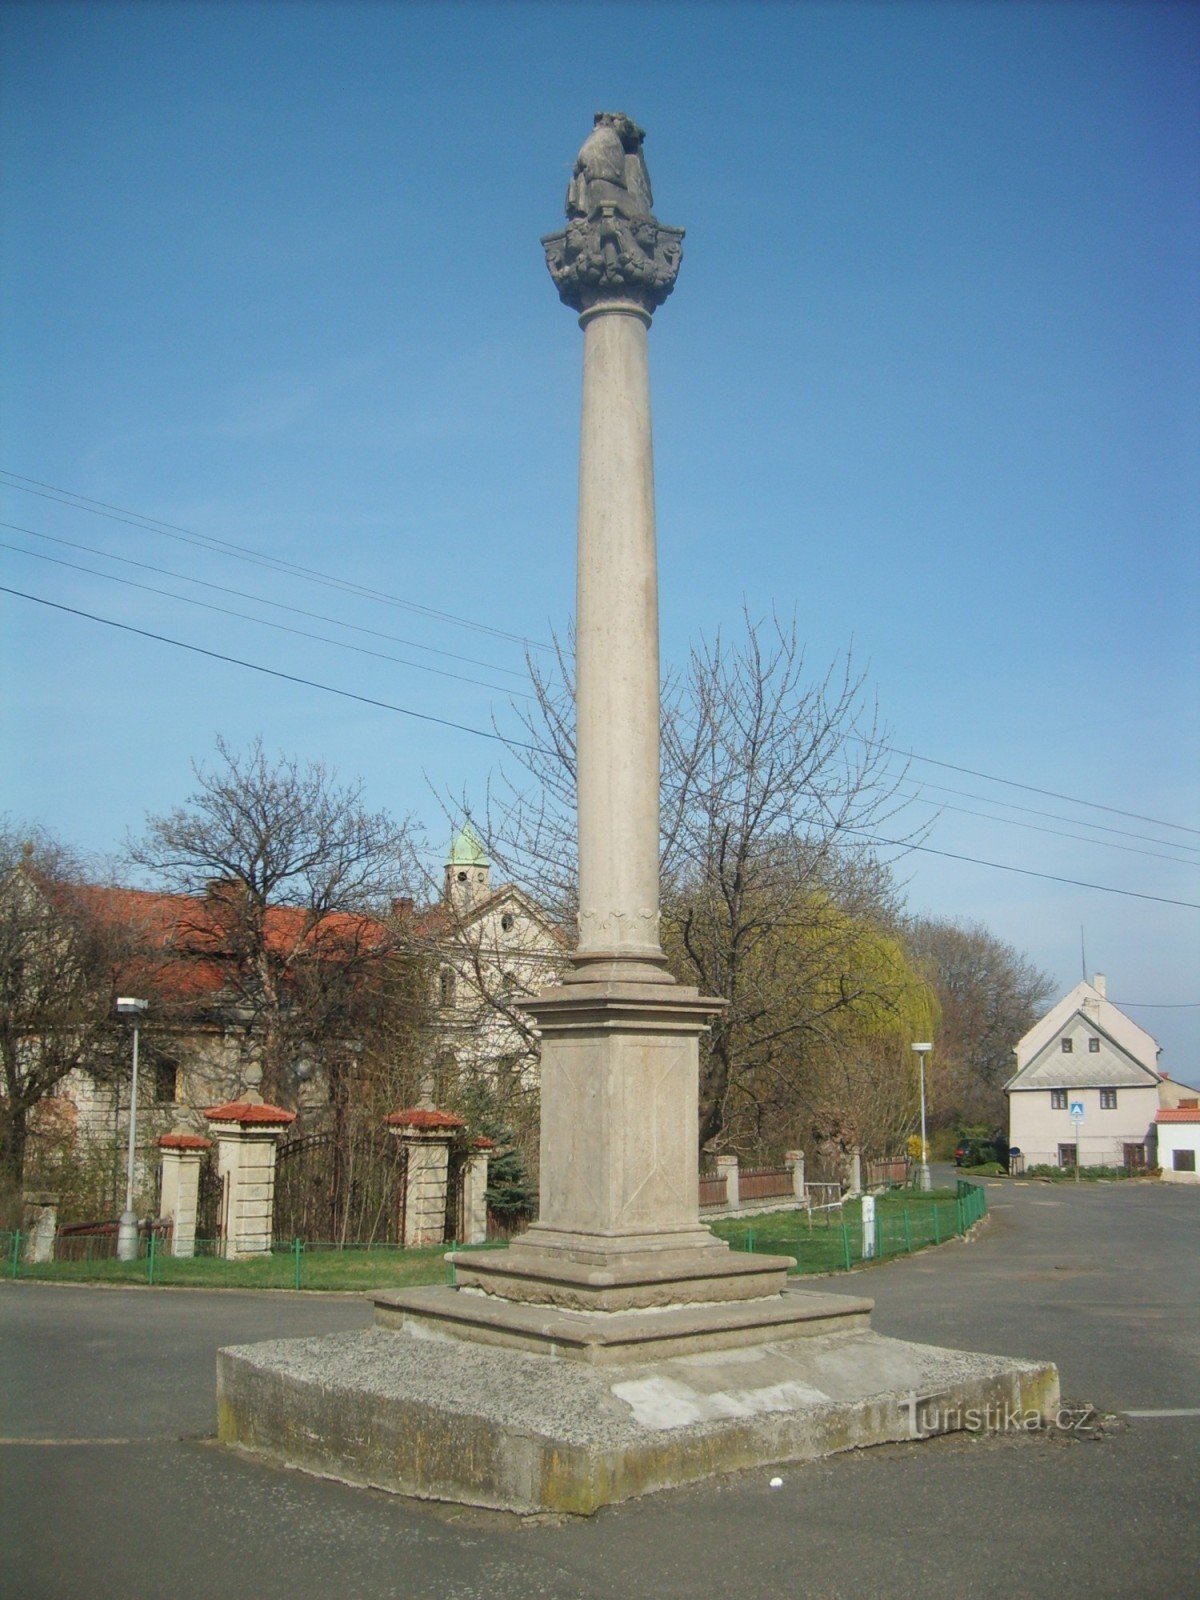 coloana istorica